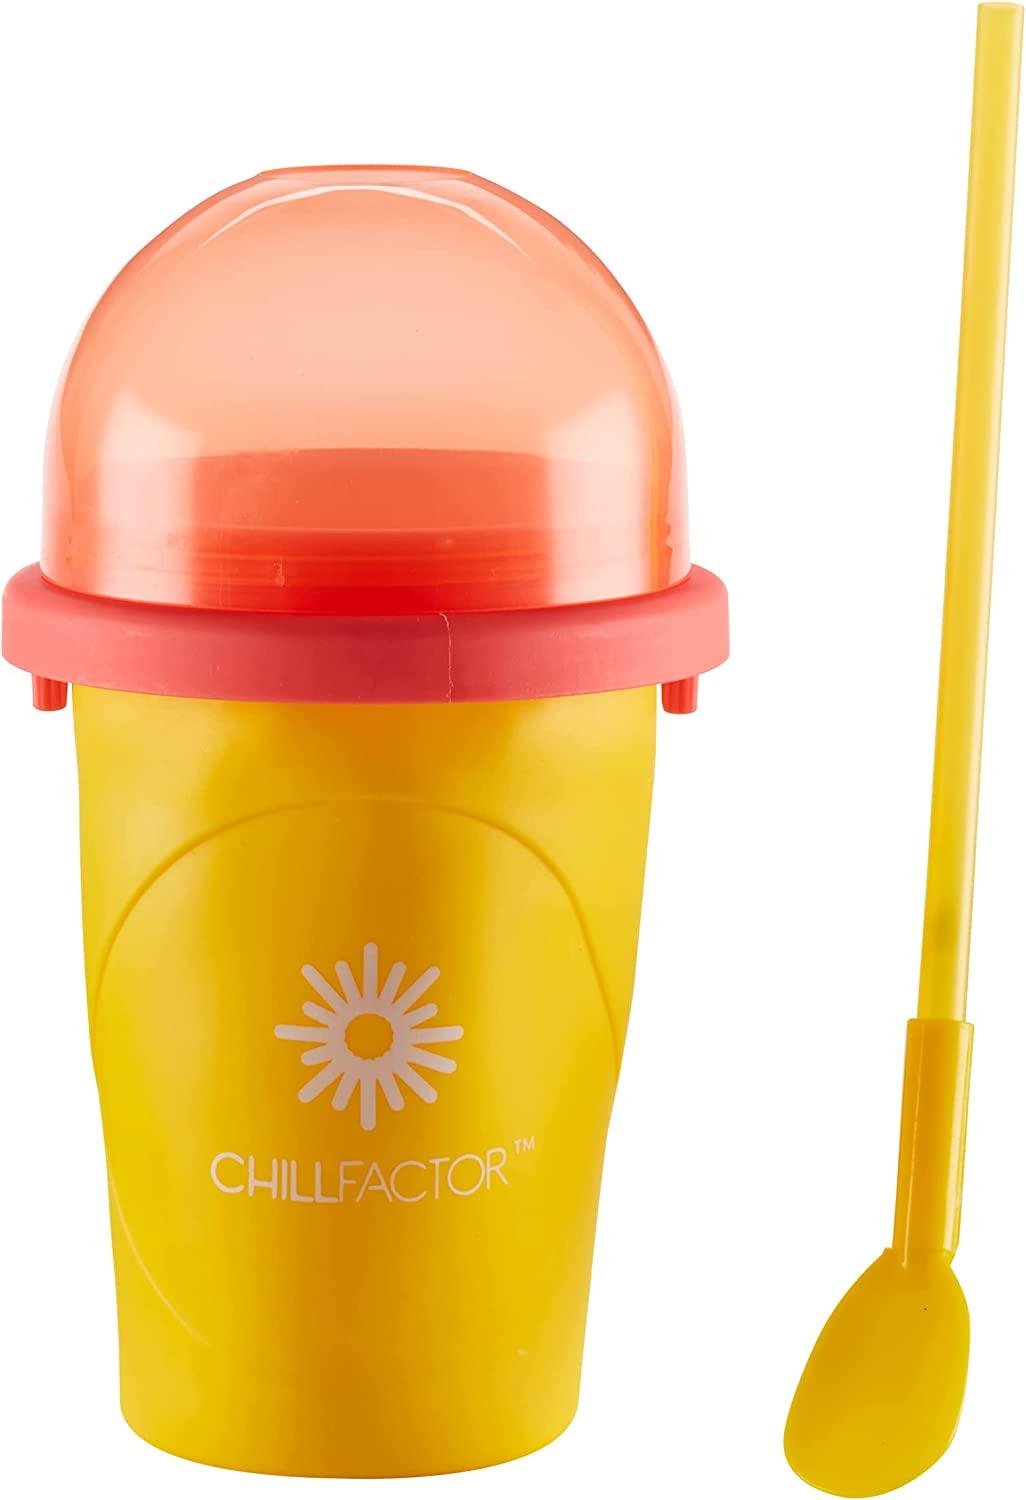 ChillFactor MANGO MANIA Reusable, Homemade Squeeze Cup slushy Maker